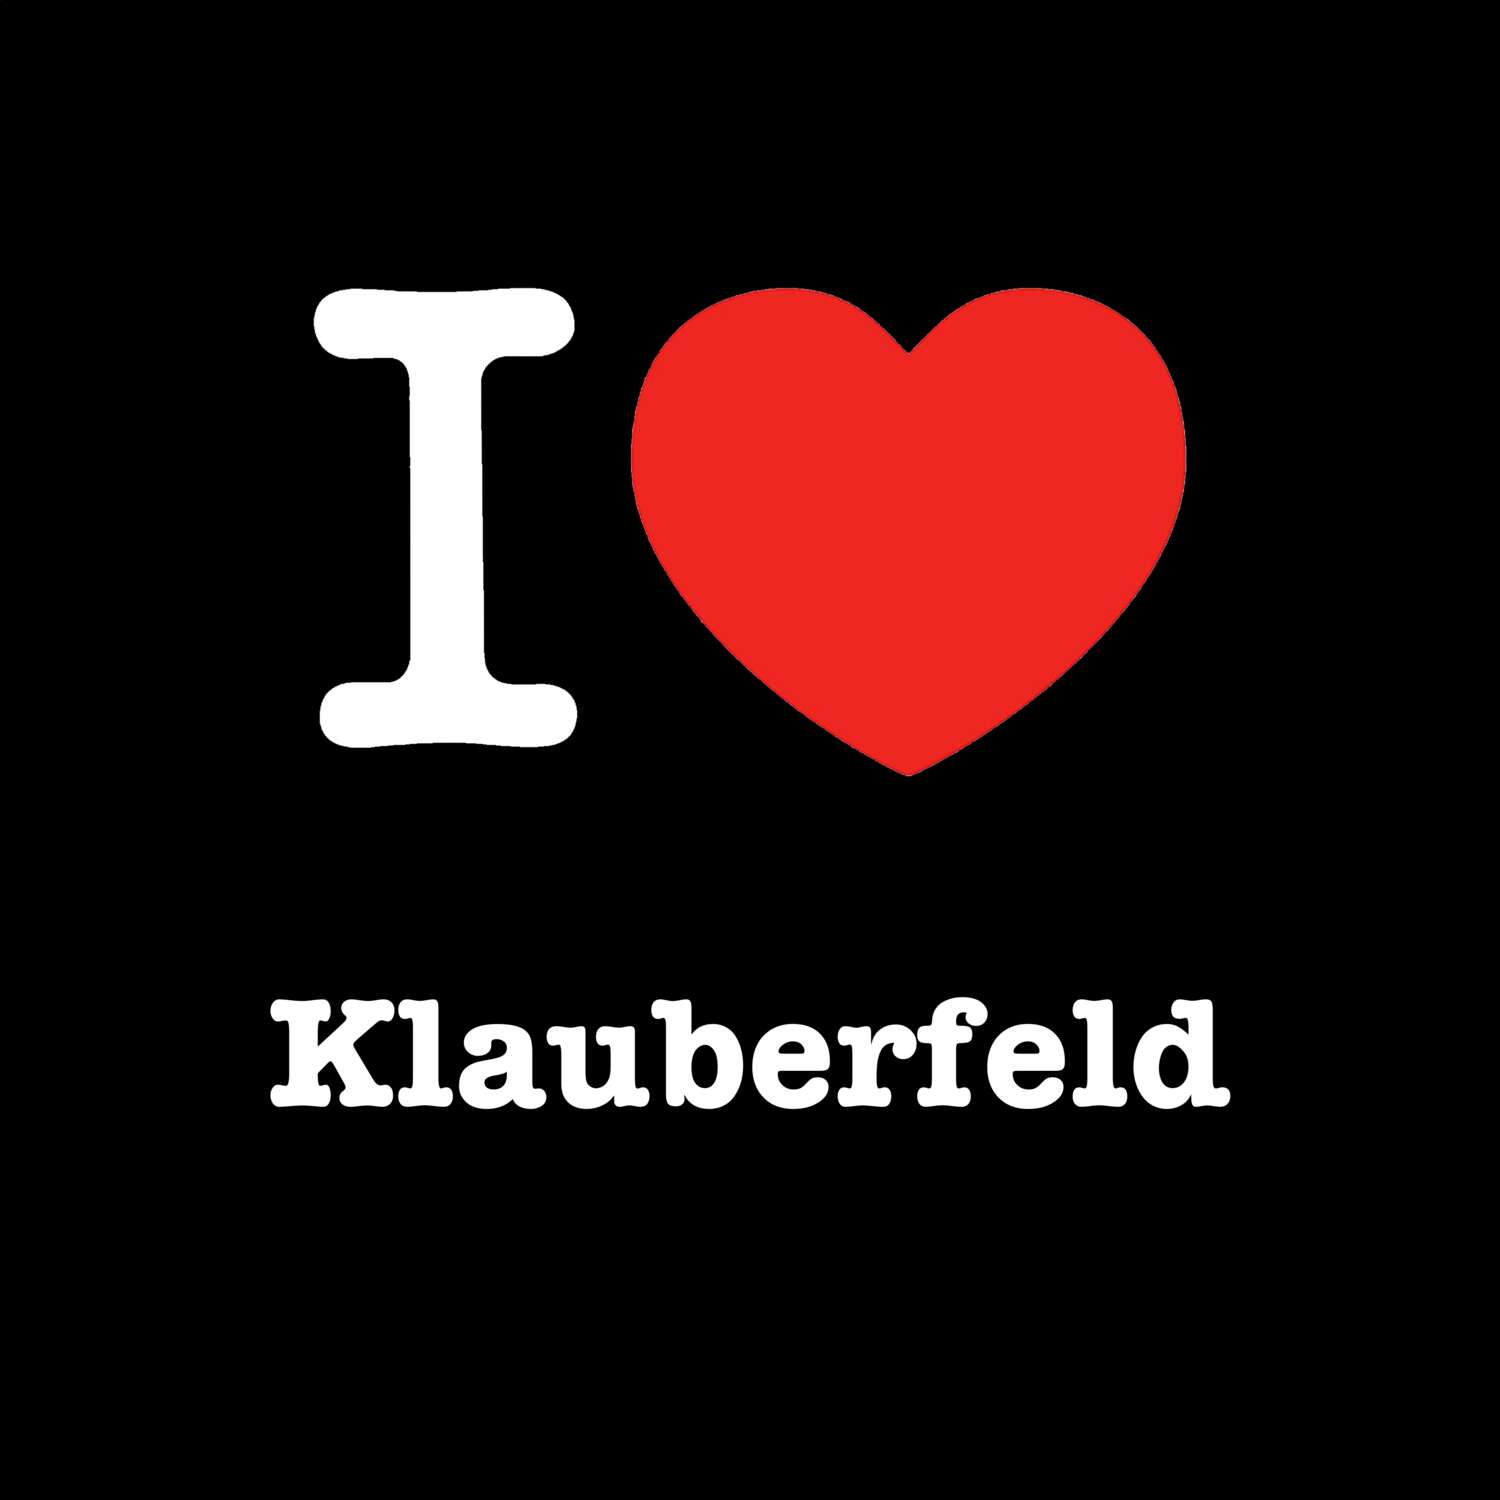 Klauberfeld T-Shirt »I love«